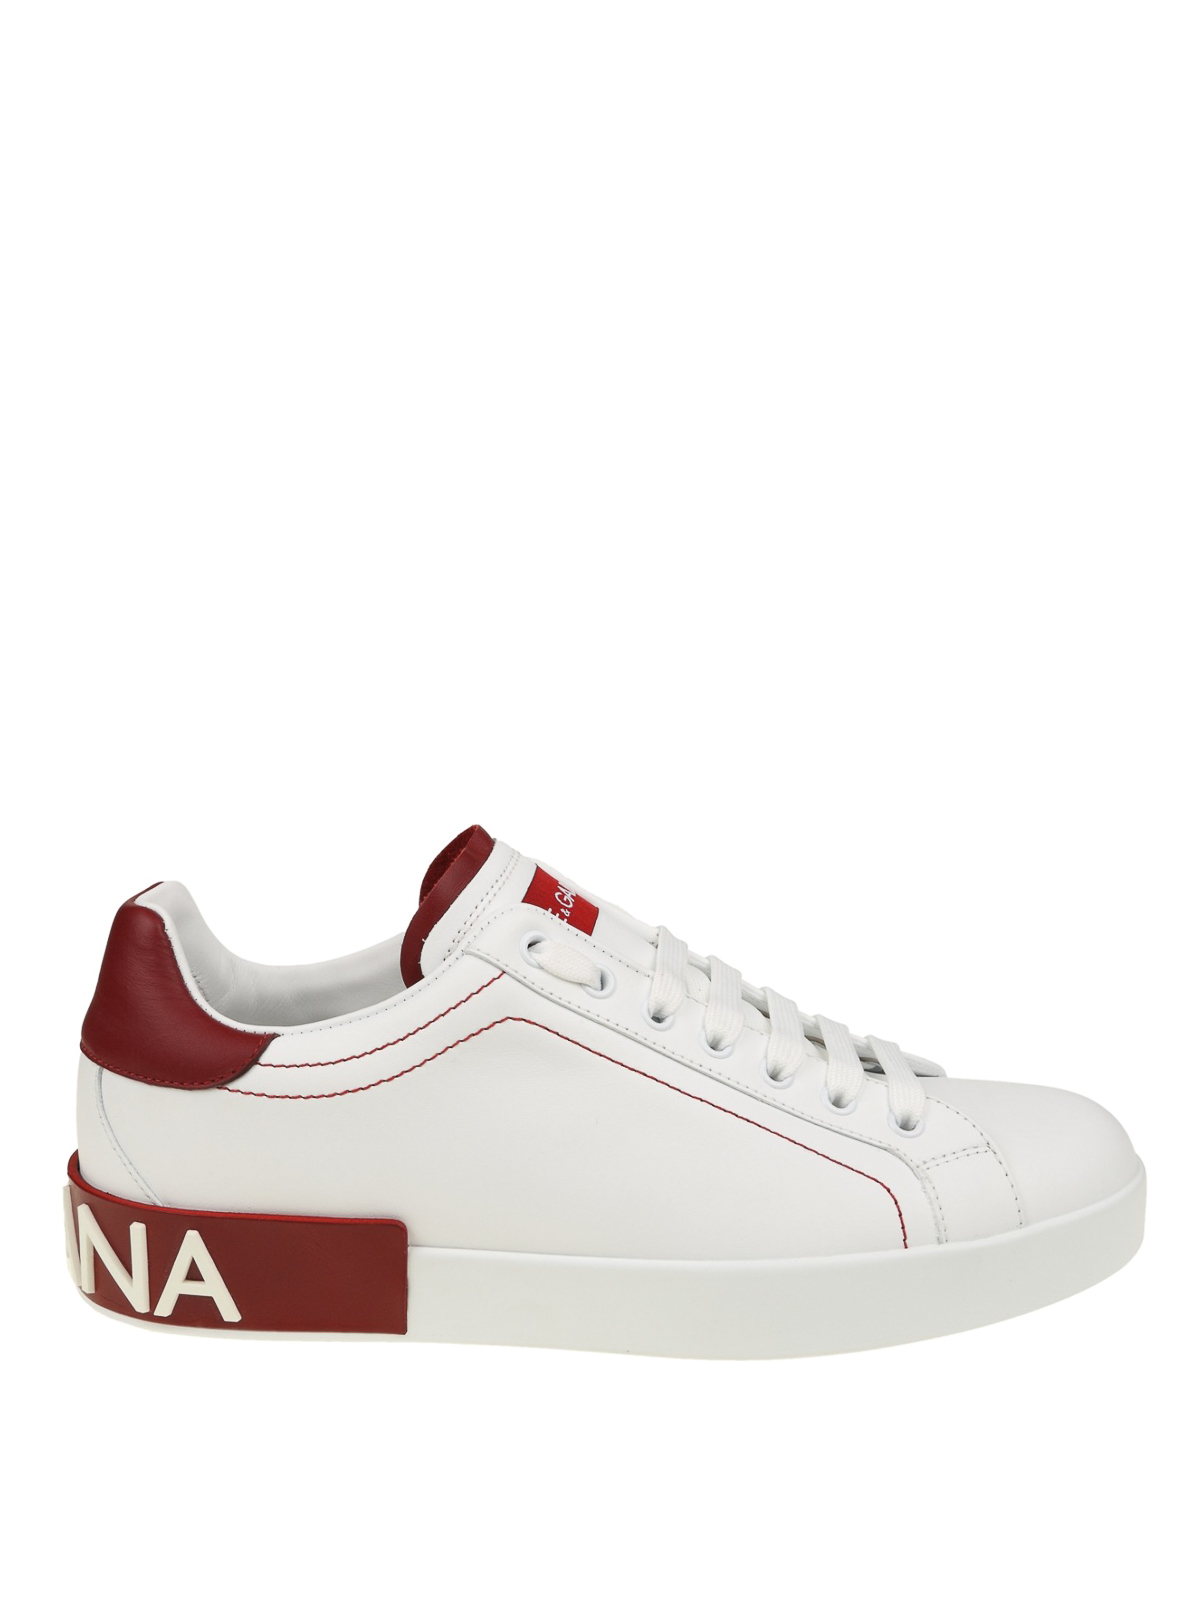 Dolce & Gabbana - Portofino white and red nappa sneakers - trainers ...